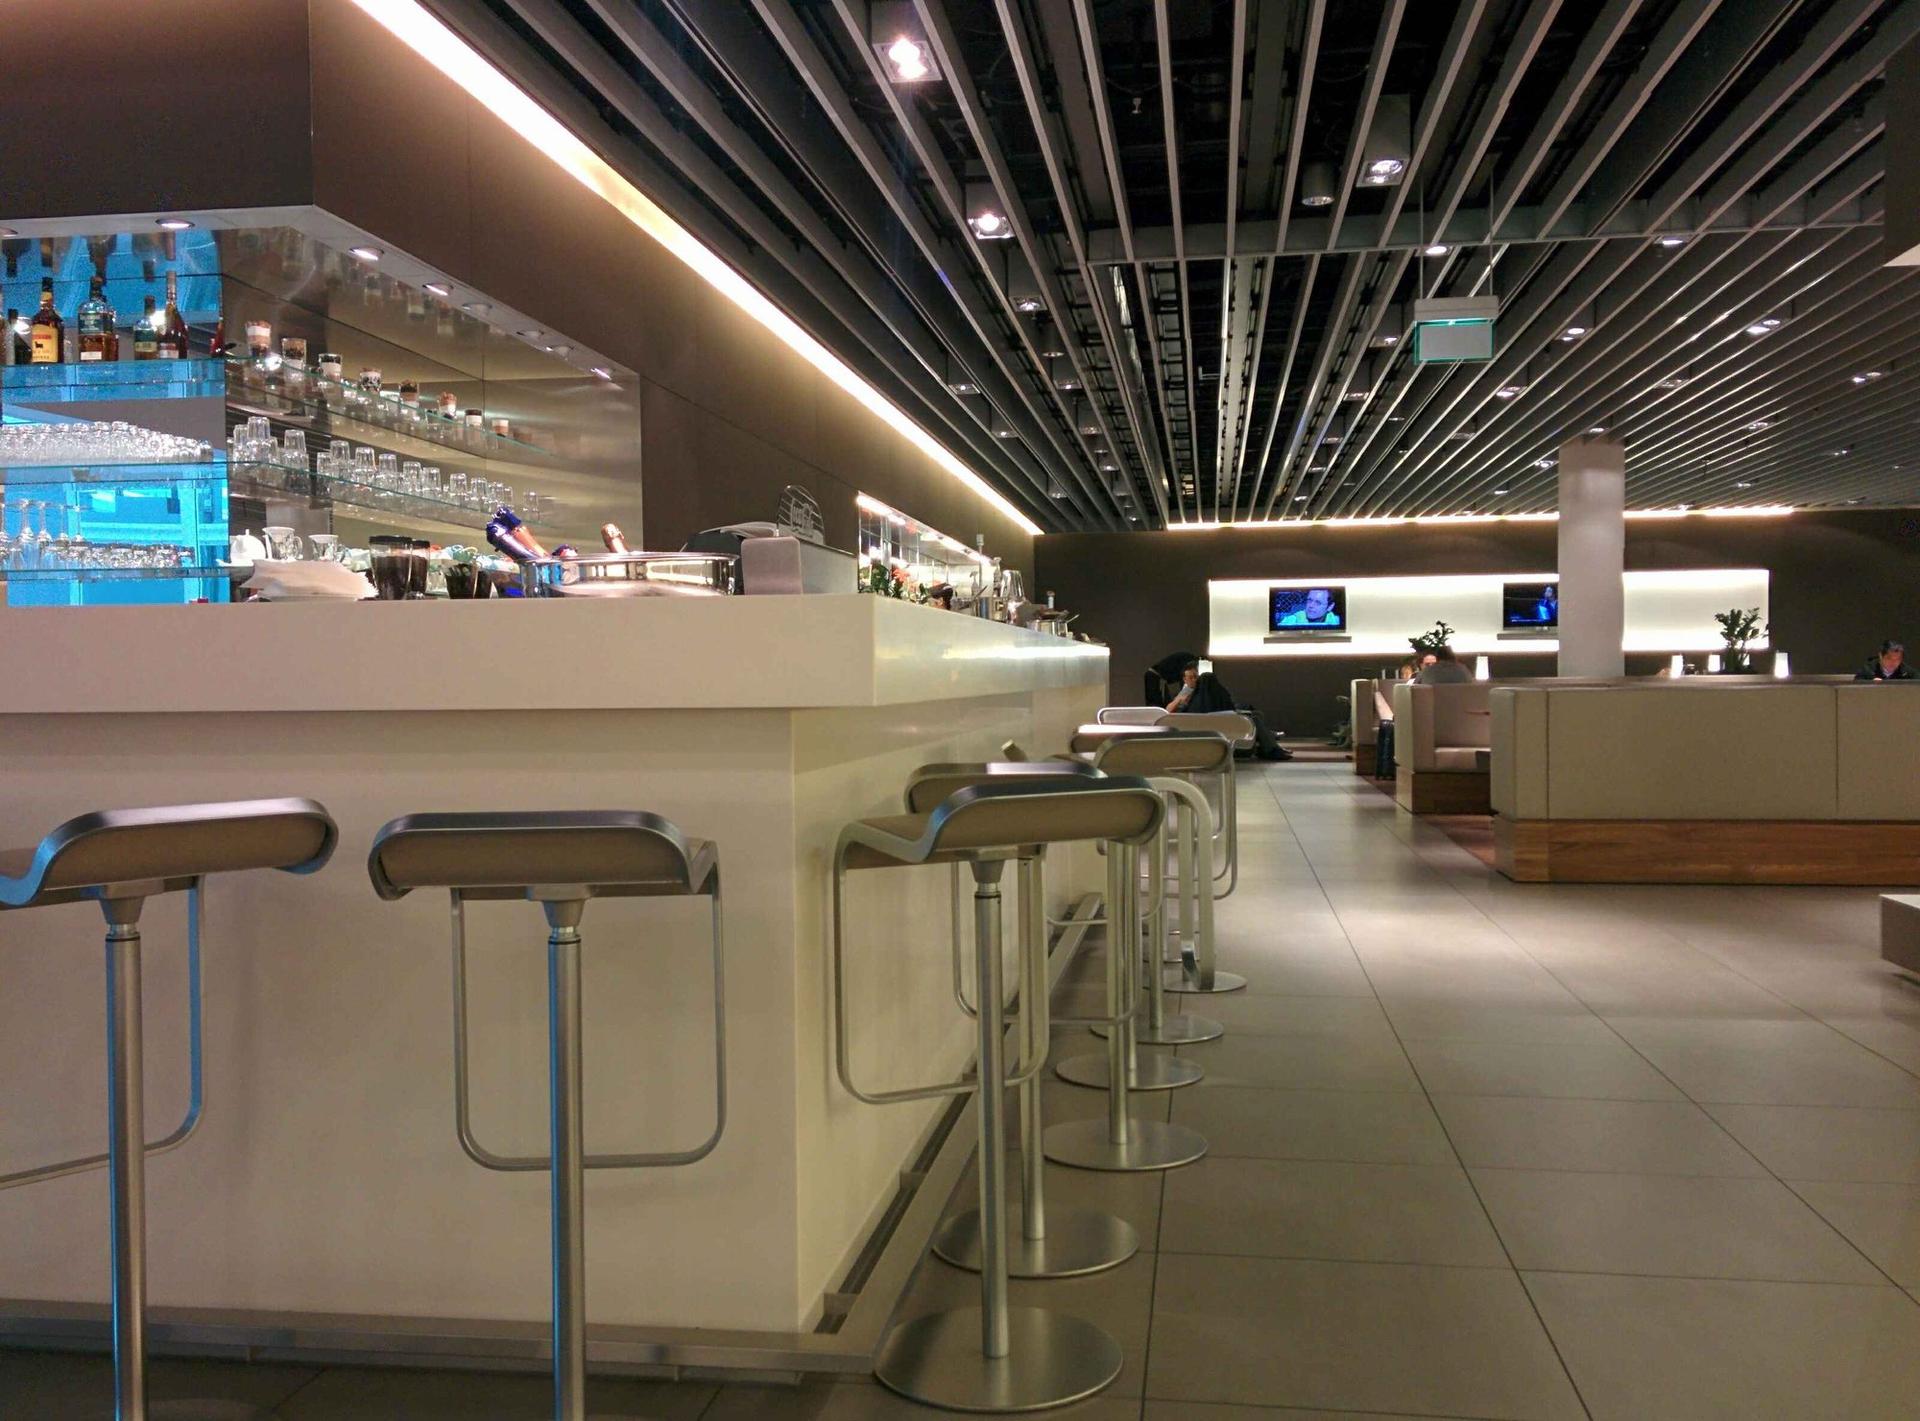 Lufthansa Senator Lounge (Gate G28, Schengen) image 1 of 1